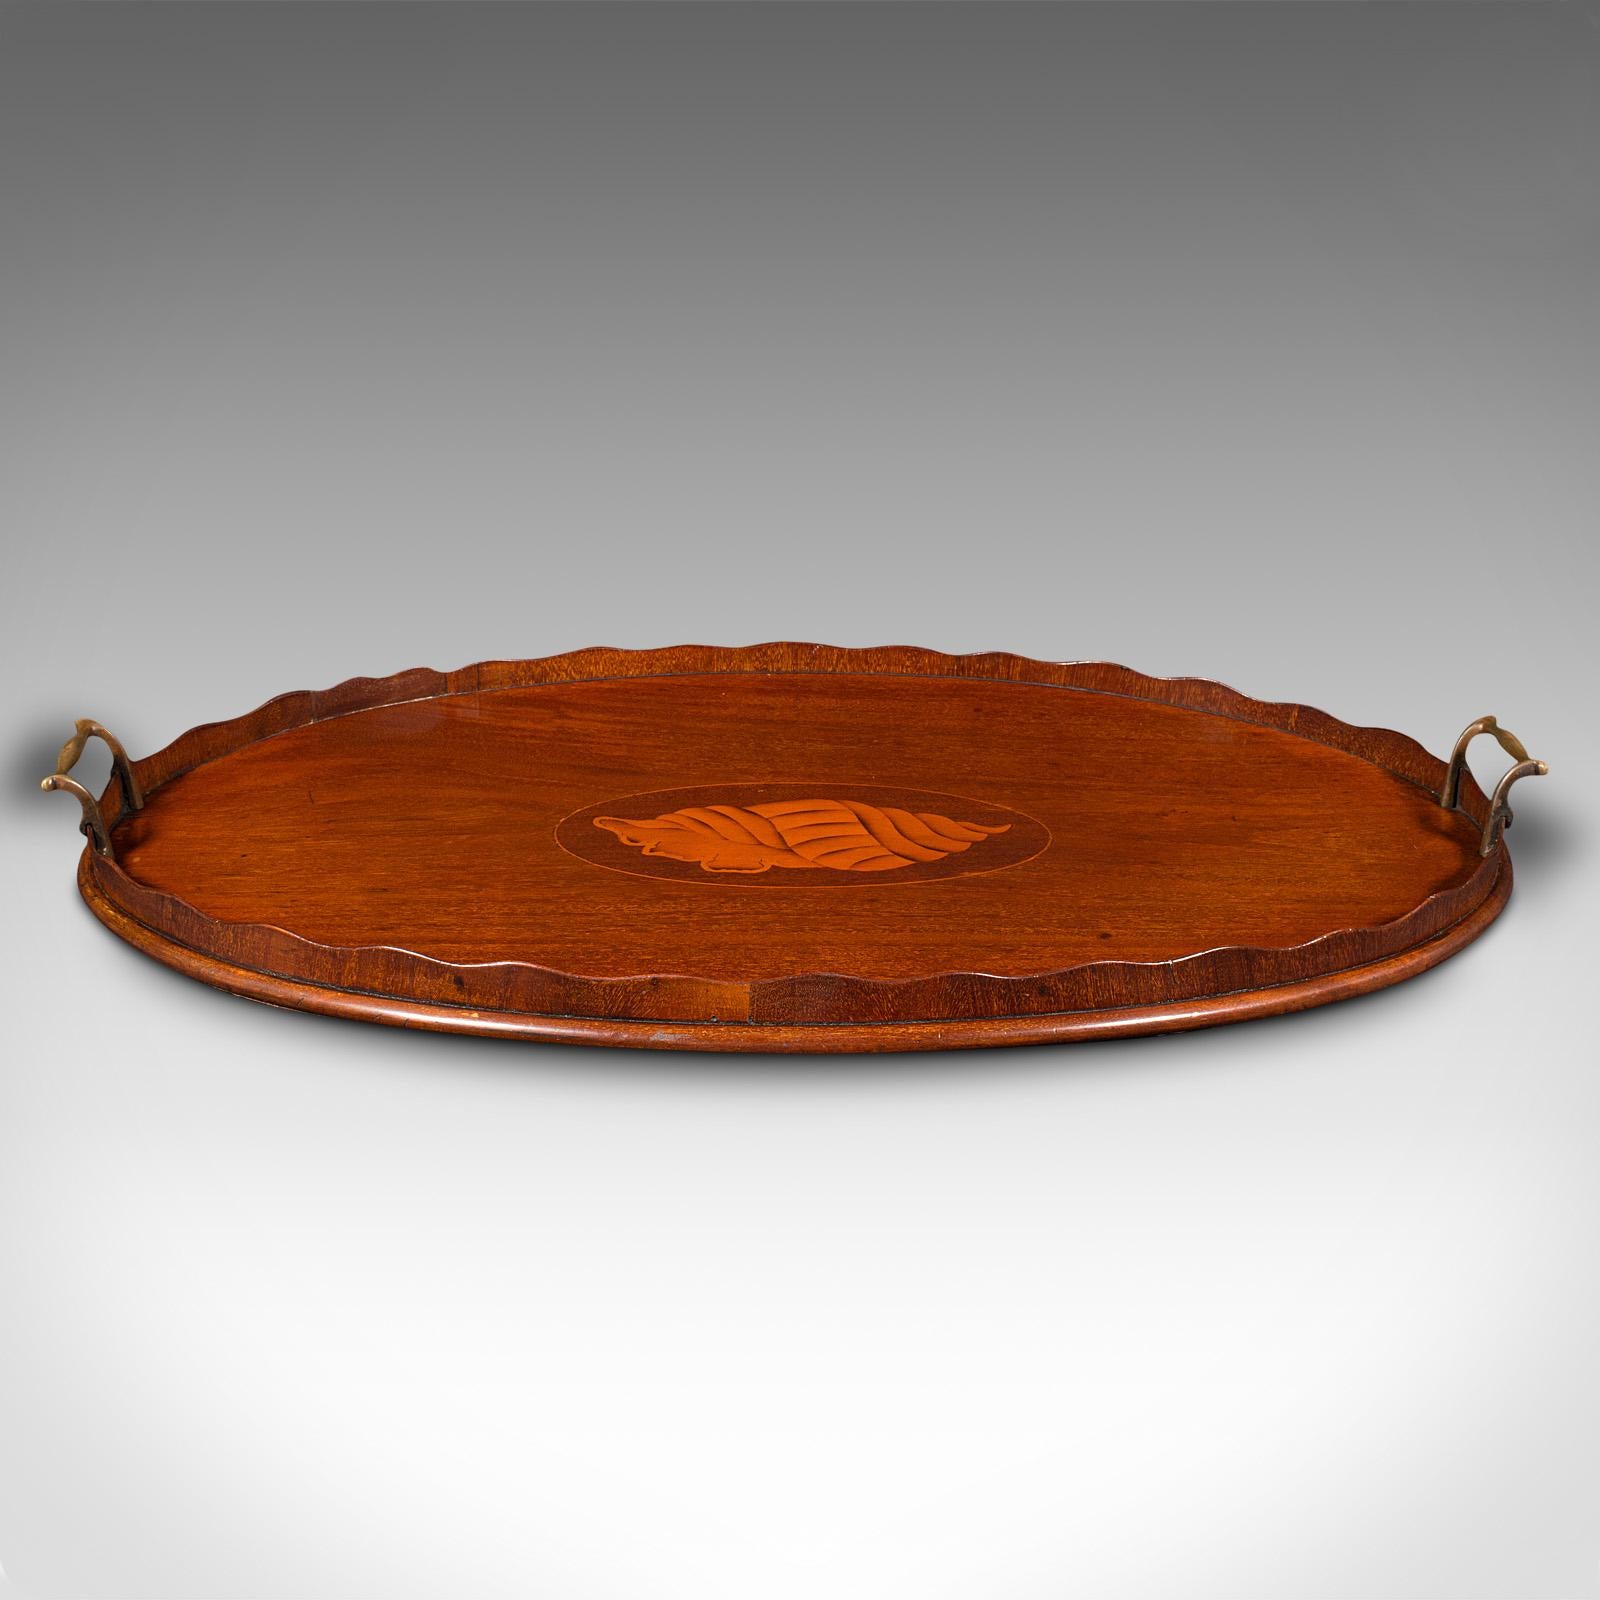 Dies ist ein antikes dekoratives Serviertablett. Ein englisches Tablett aus Mahagoni und Buchsbaum für den Nachmittagstee, aus der Regency-Zeit, um 1830.

Hervorragende spätgeorgianische Handwerkskunst, mit wunderbaren Farben und